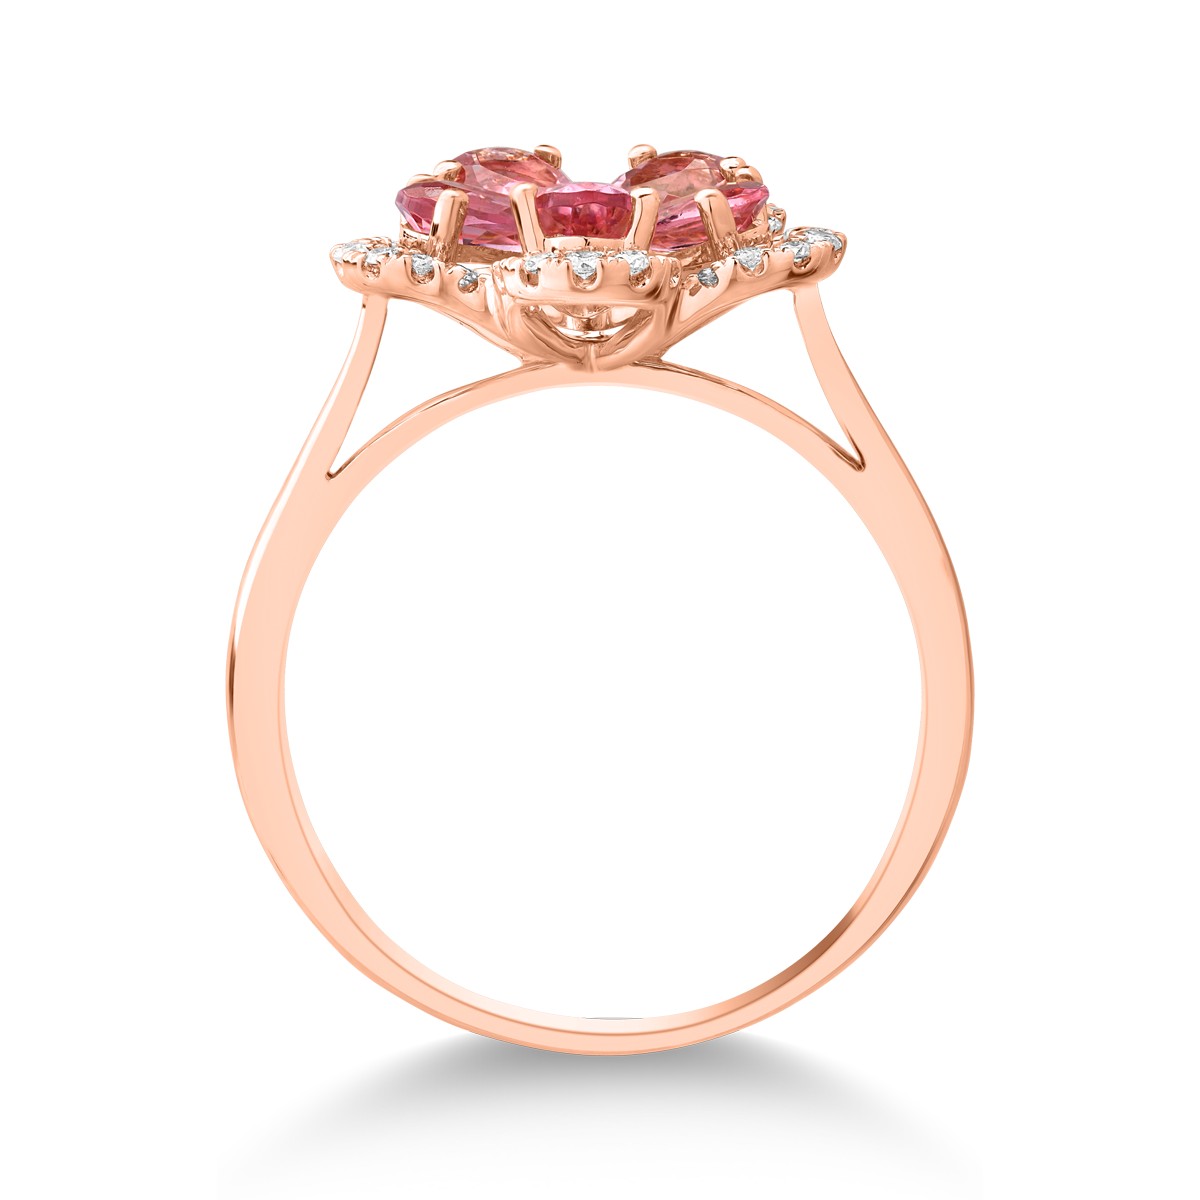 18k rózsaszín virággyűrű 1ct rózsaszín kurmalin és gyémánt 0.15ct